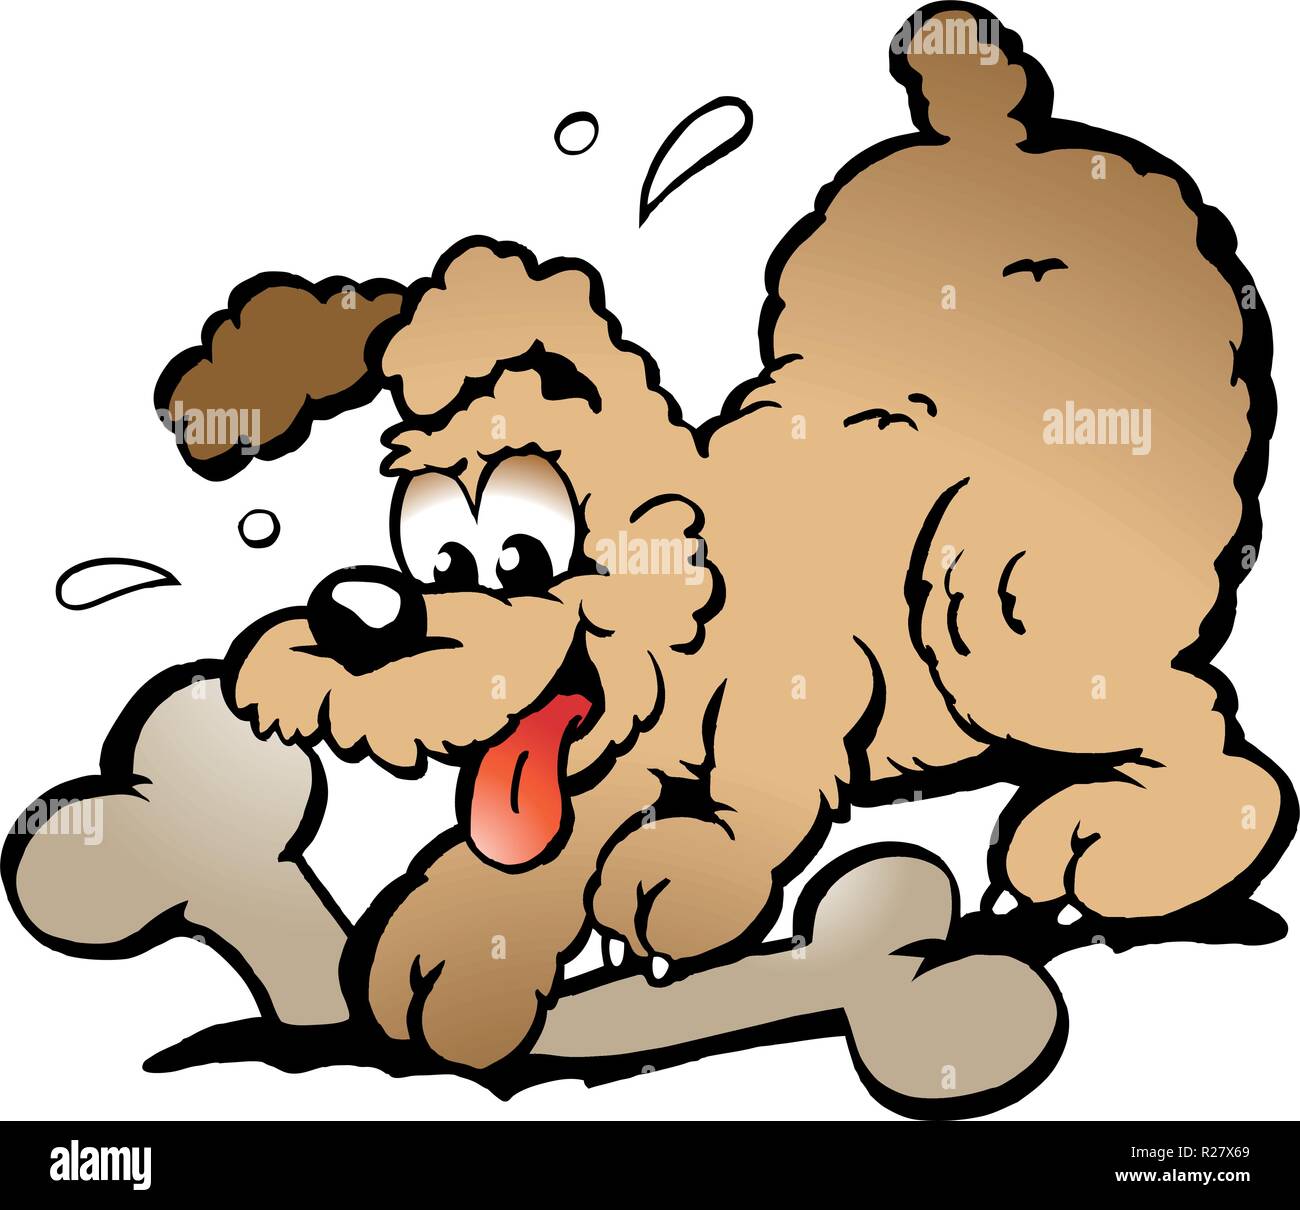 Handgezeichnete Vektor-Illustration eines Welpen Hund mit einem großen Knochen Stock Vektor